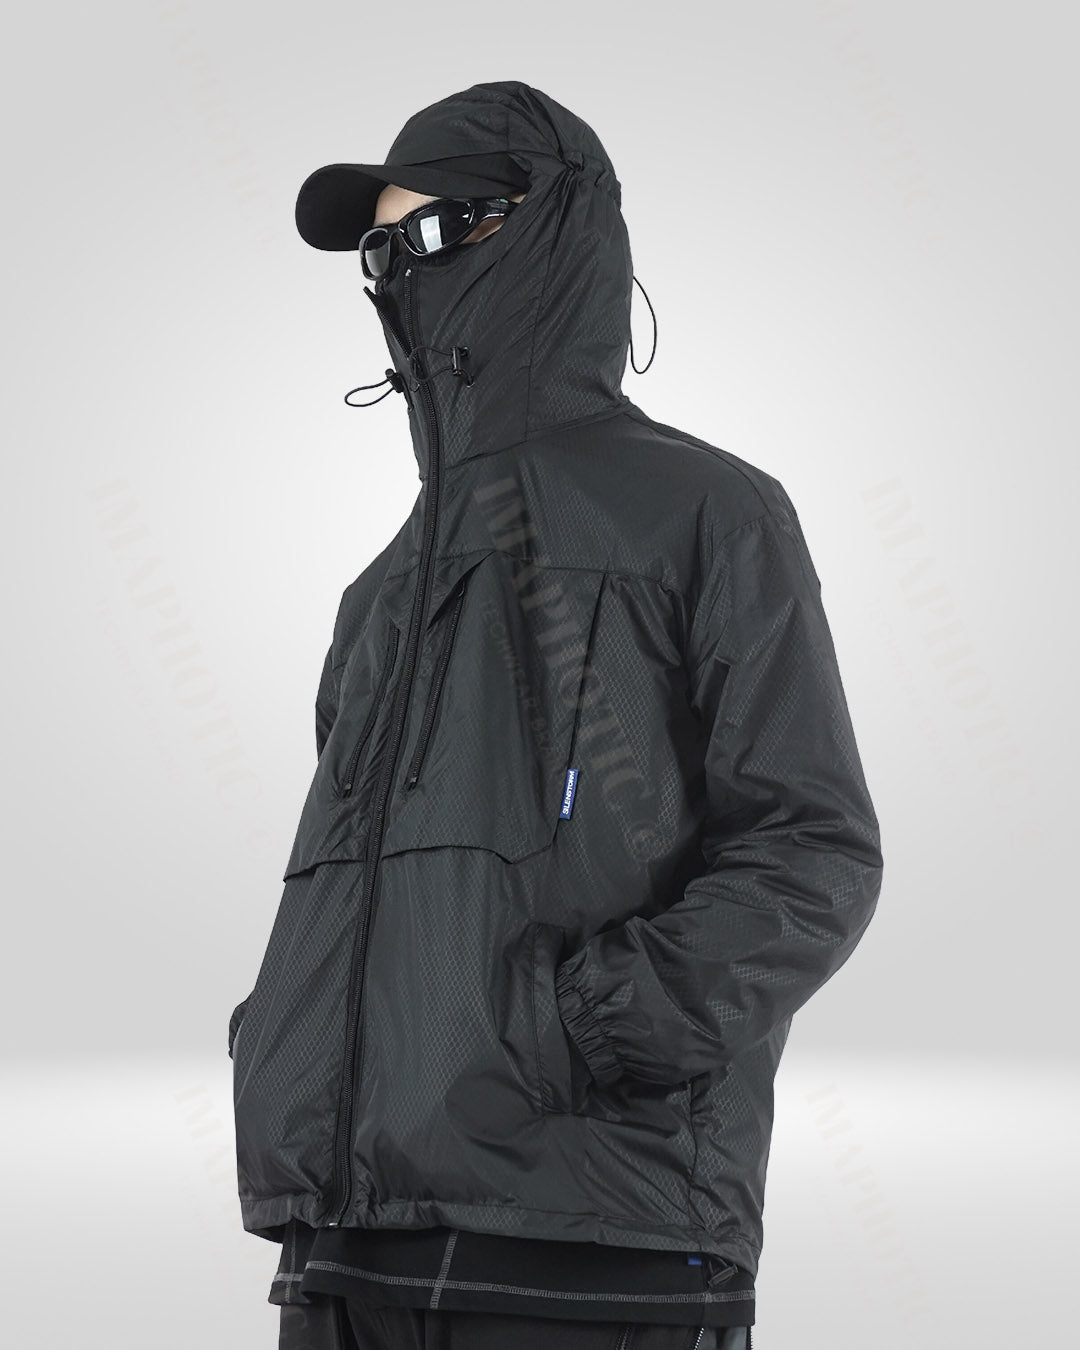 Dhr Aanpassen Talloos Black Sun Protection Jacket - UV Protection Lightweight Outdoor Gear –  Imaphotic